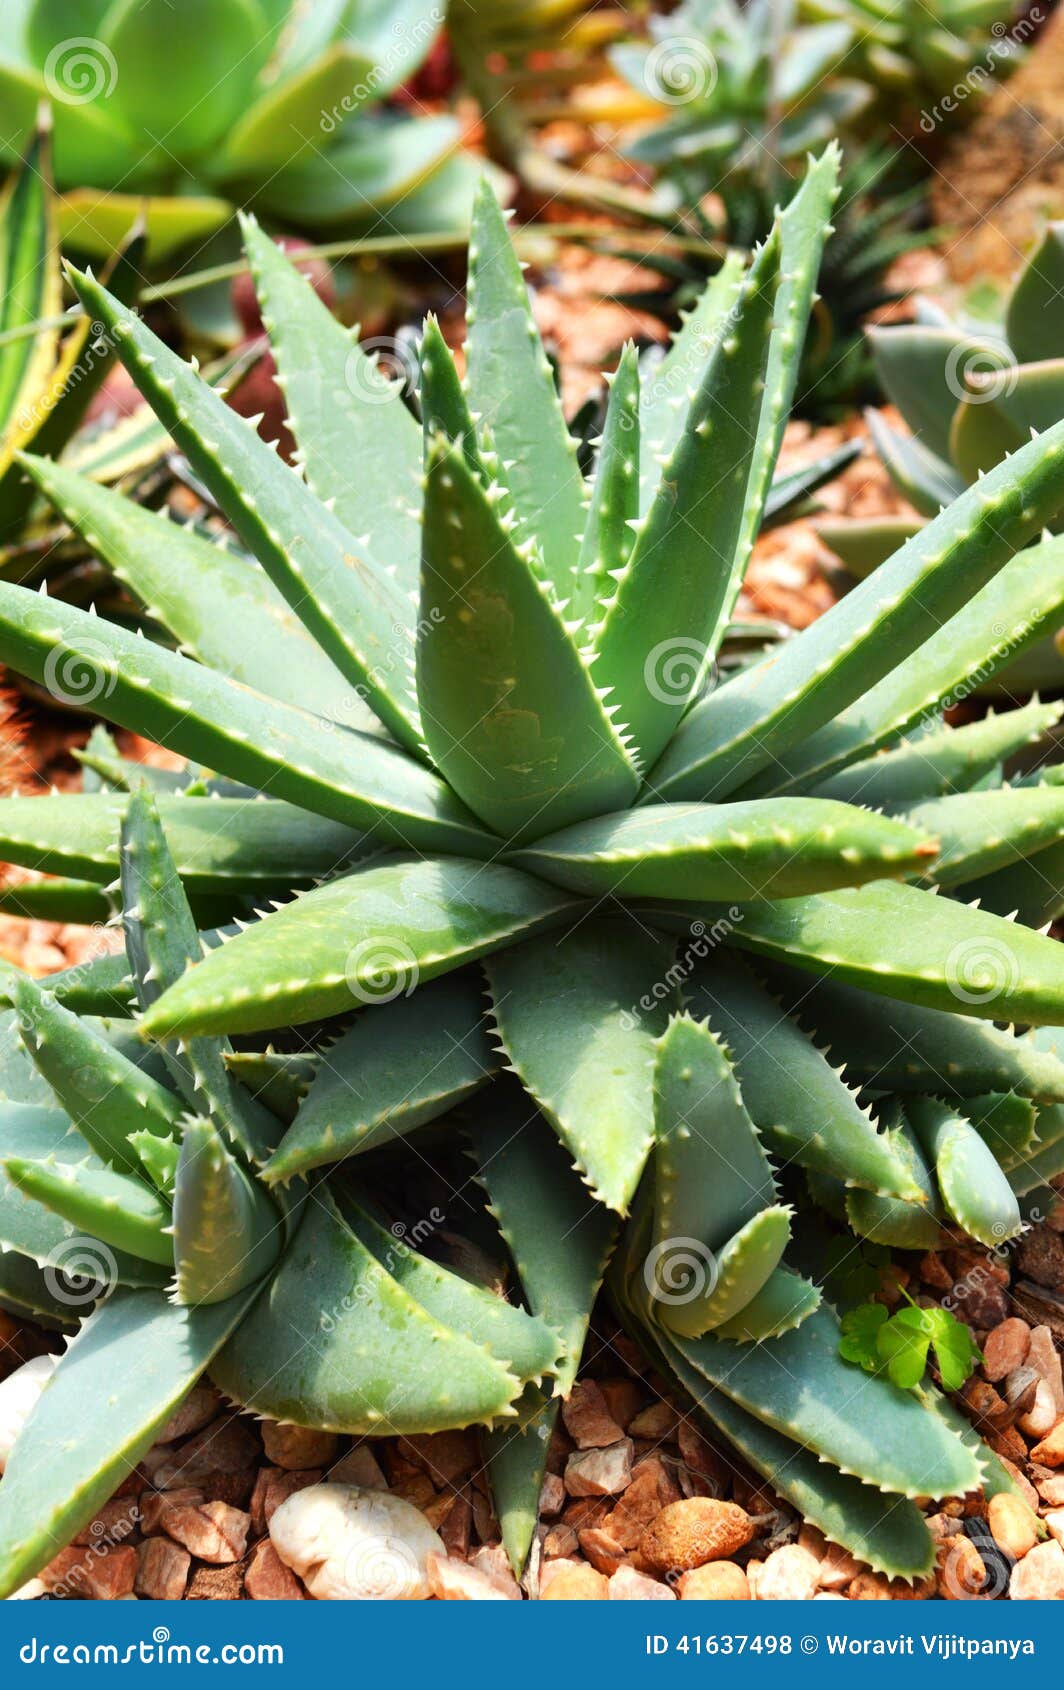 diepgaand schotel eigenaar Cactus Aloe vera stock photo. Image of green, decorating - 41637498